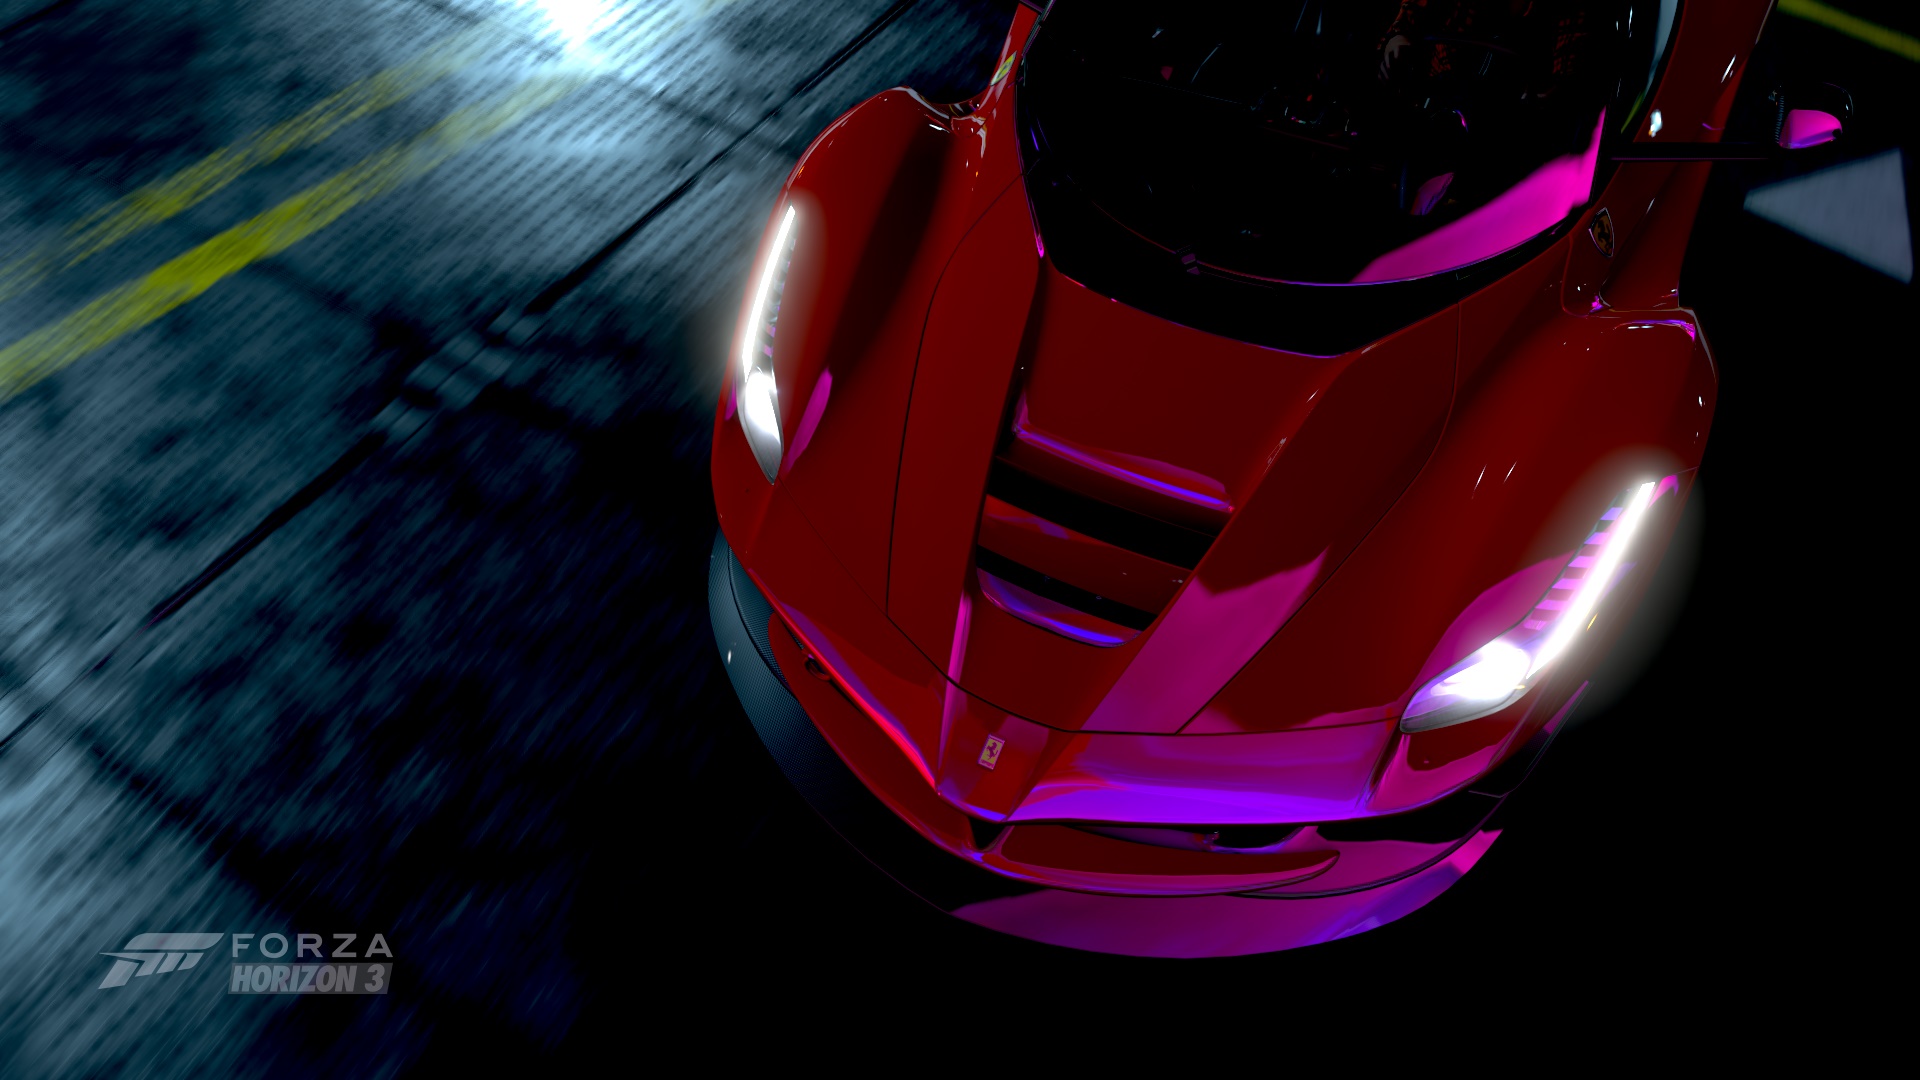 Car Ferrari Laferrari Forza Horizon 3 Video Game 1920x1080